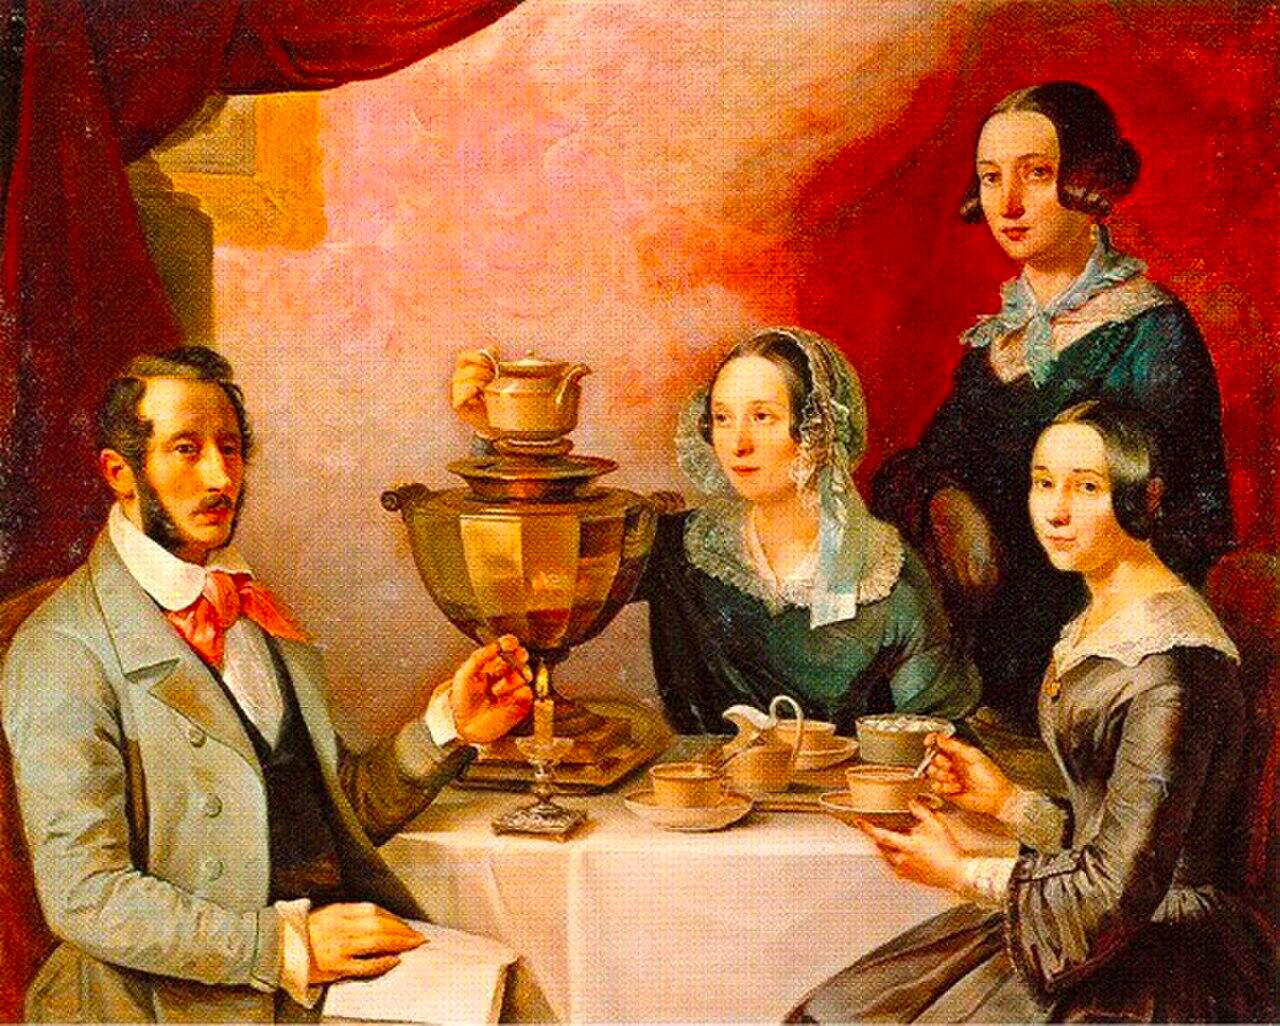 Тимофей Мягков. Семейство за чаем, 1844. Девушки изображены с «викторианской» гладкой прической